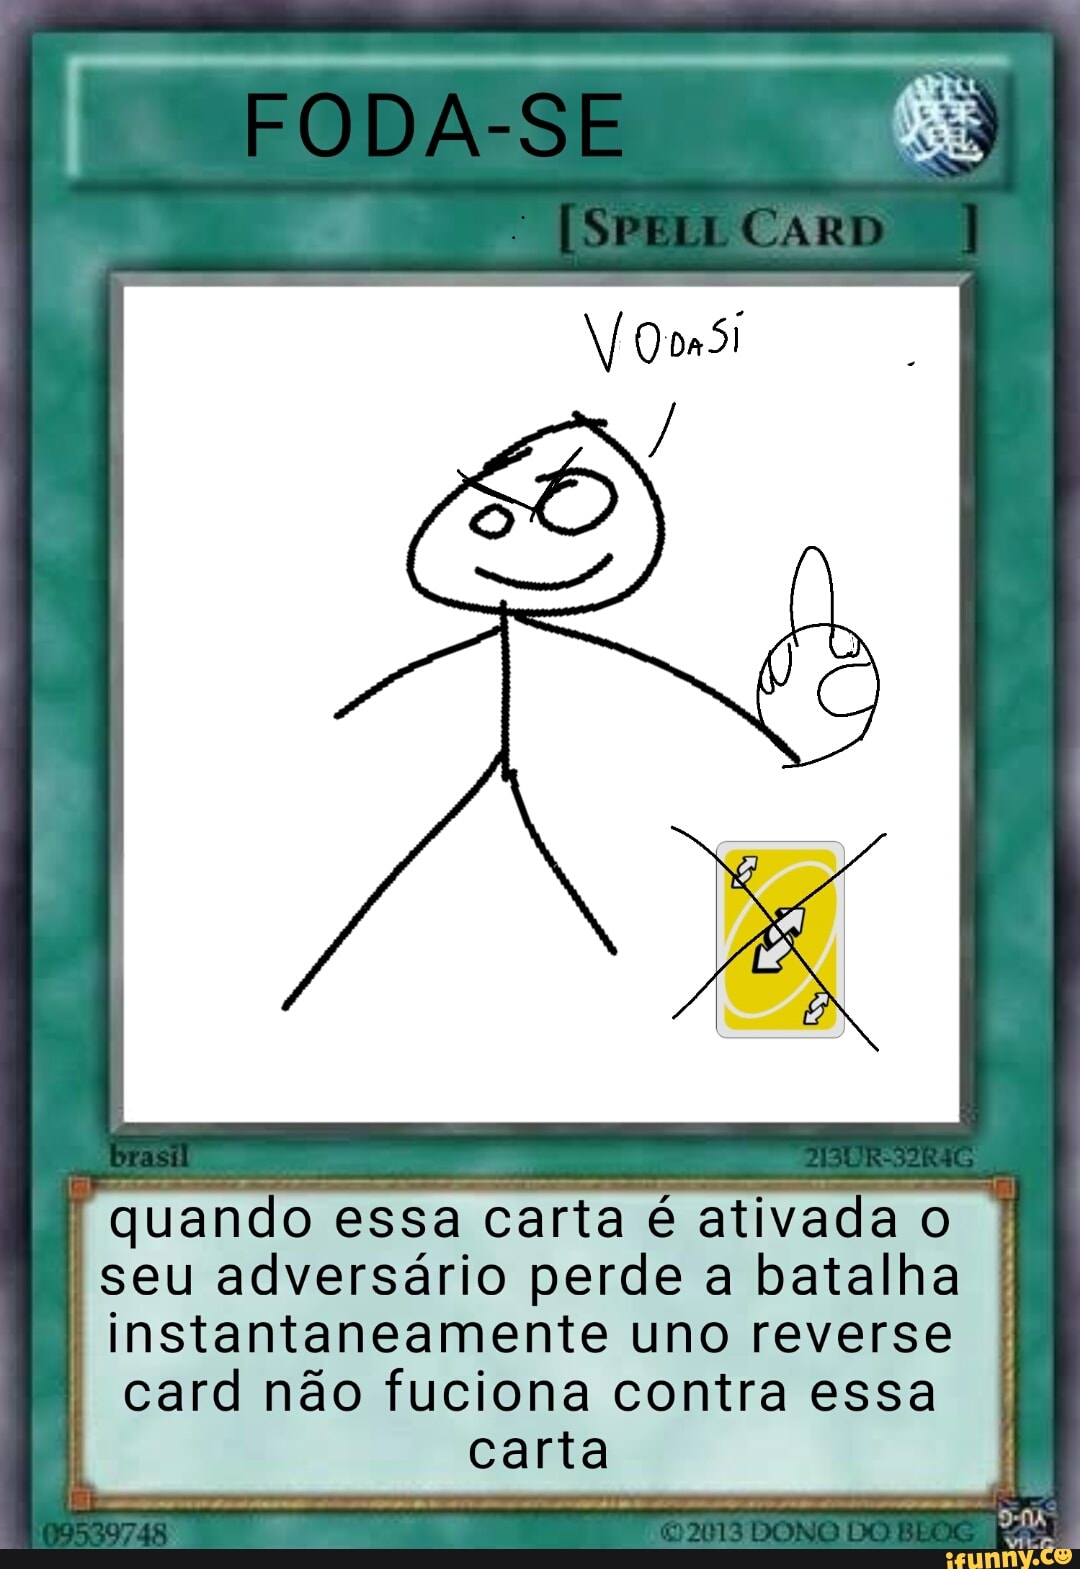 meme #uno #foryou @Felipe #irritante Esse jogo de cartas foi